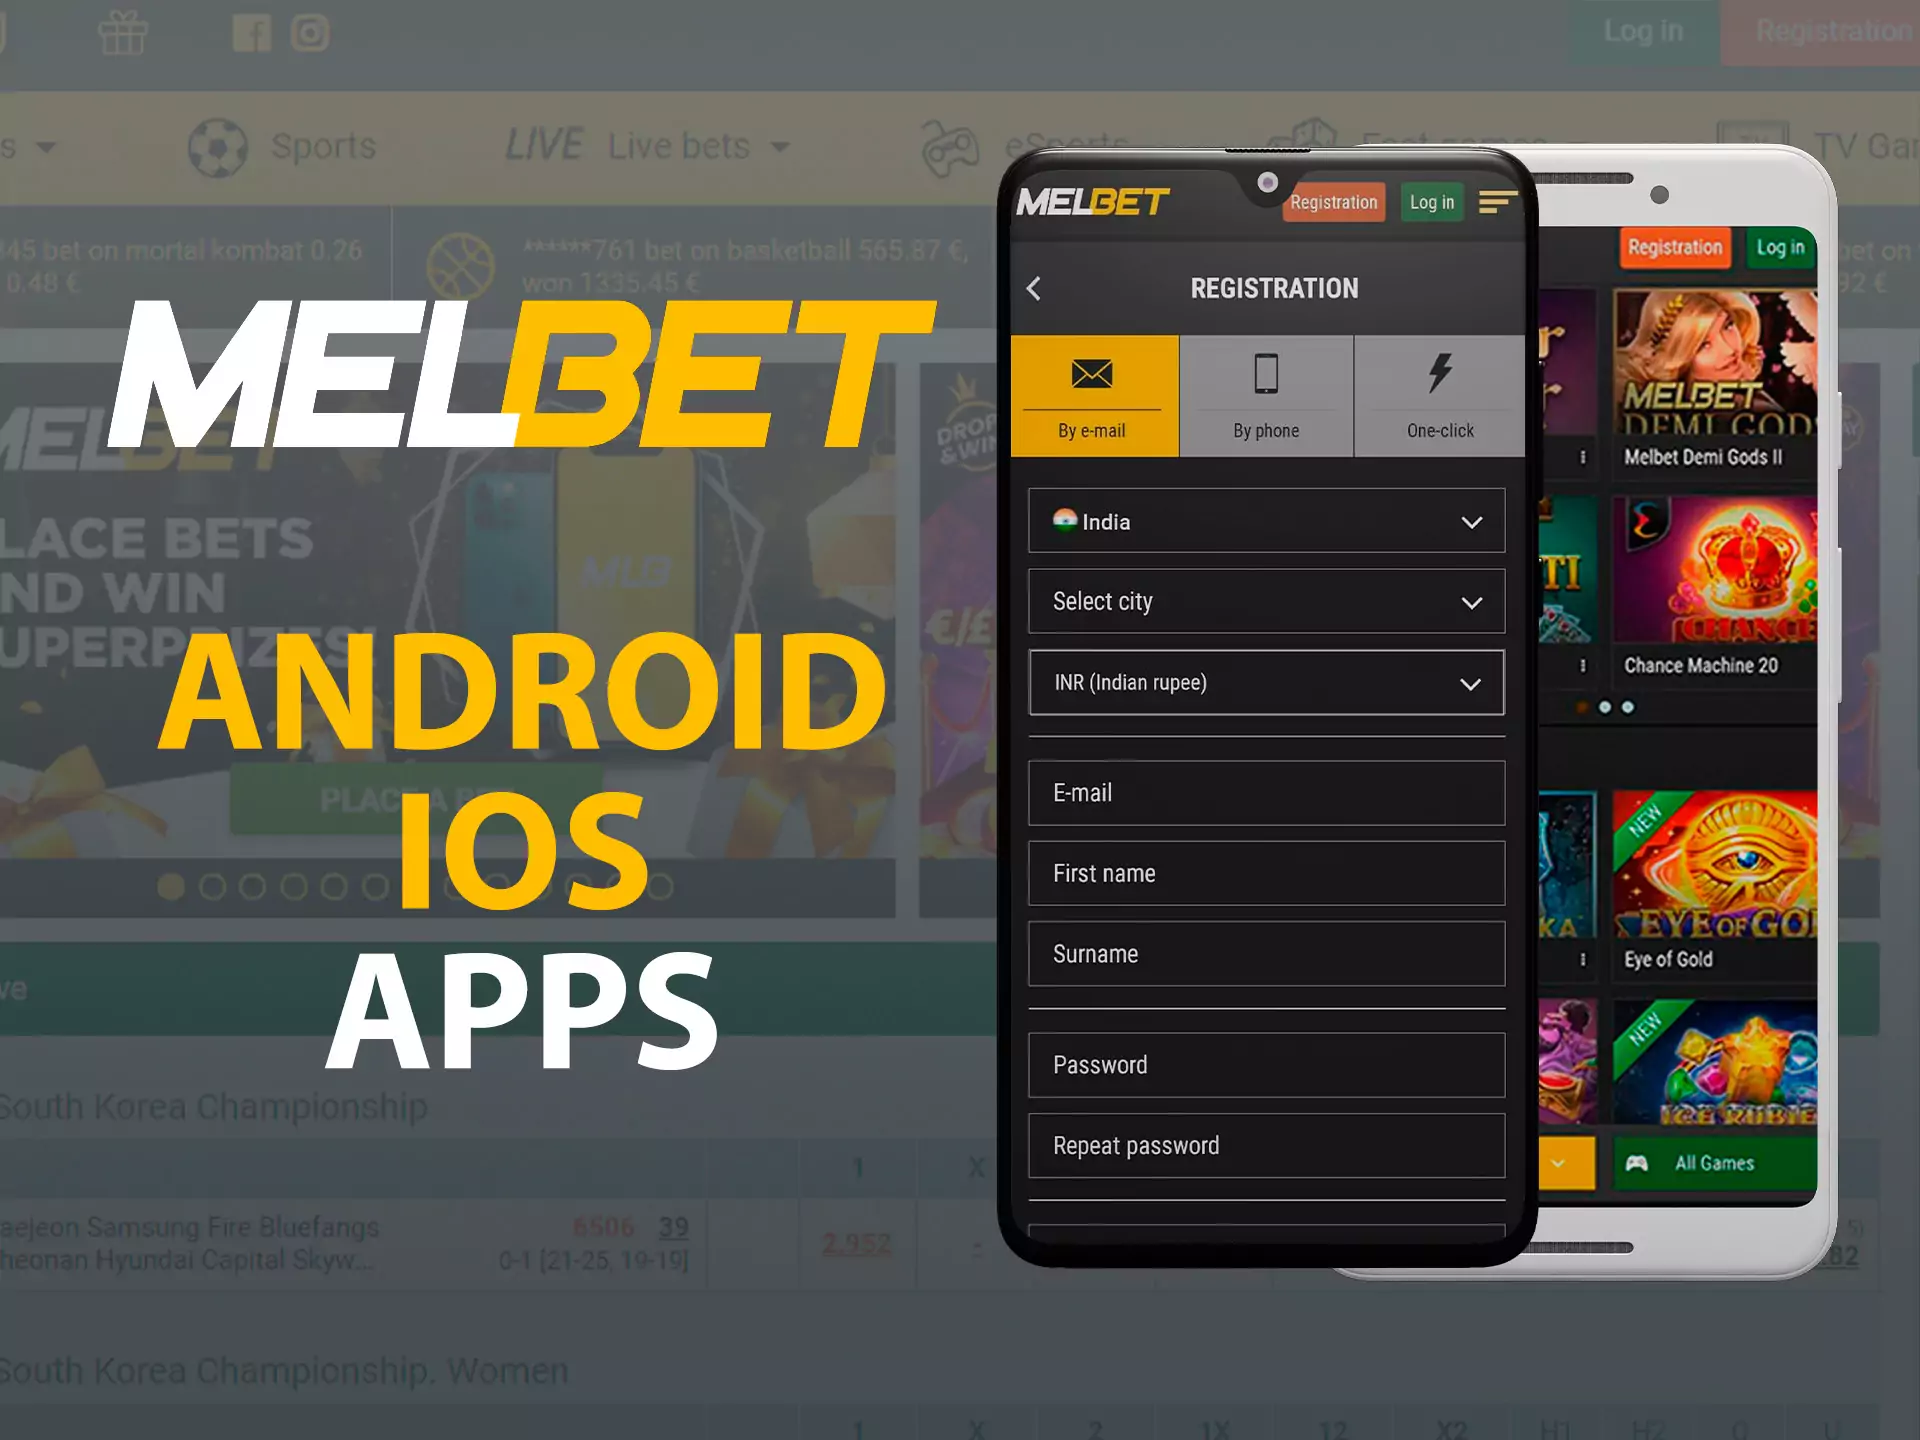 Виберіть додаток Android або iOS Мелбет для завантаження. Потім дотримуйтесь інструкцій нижче